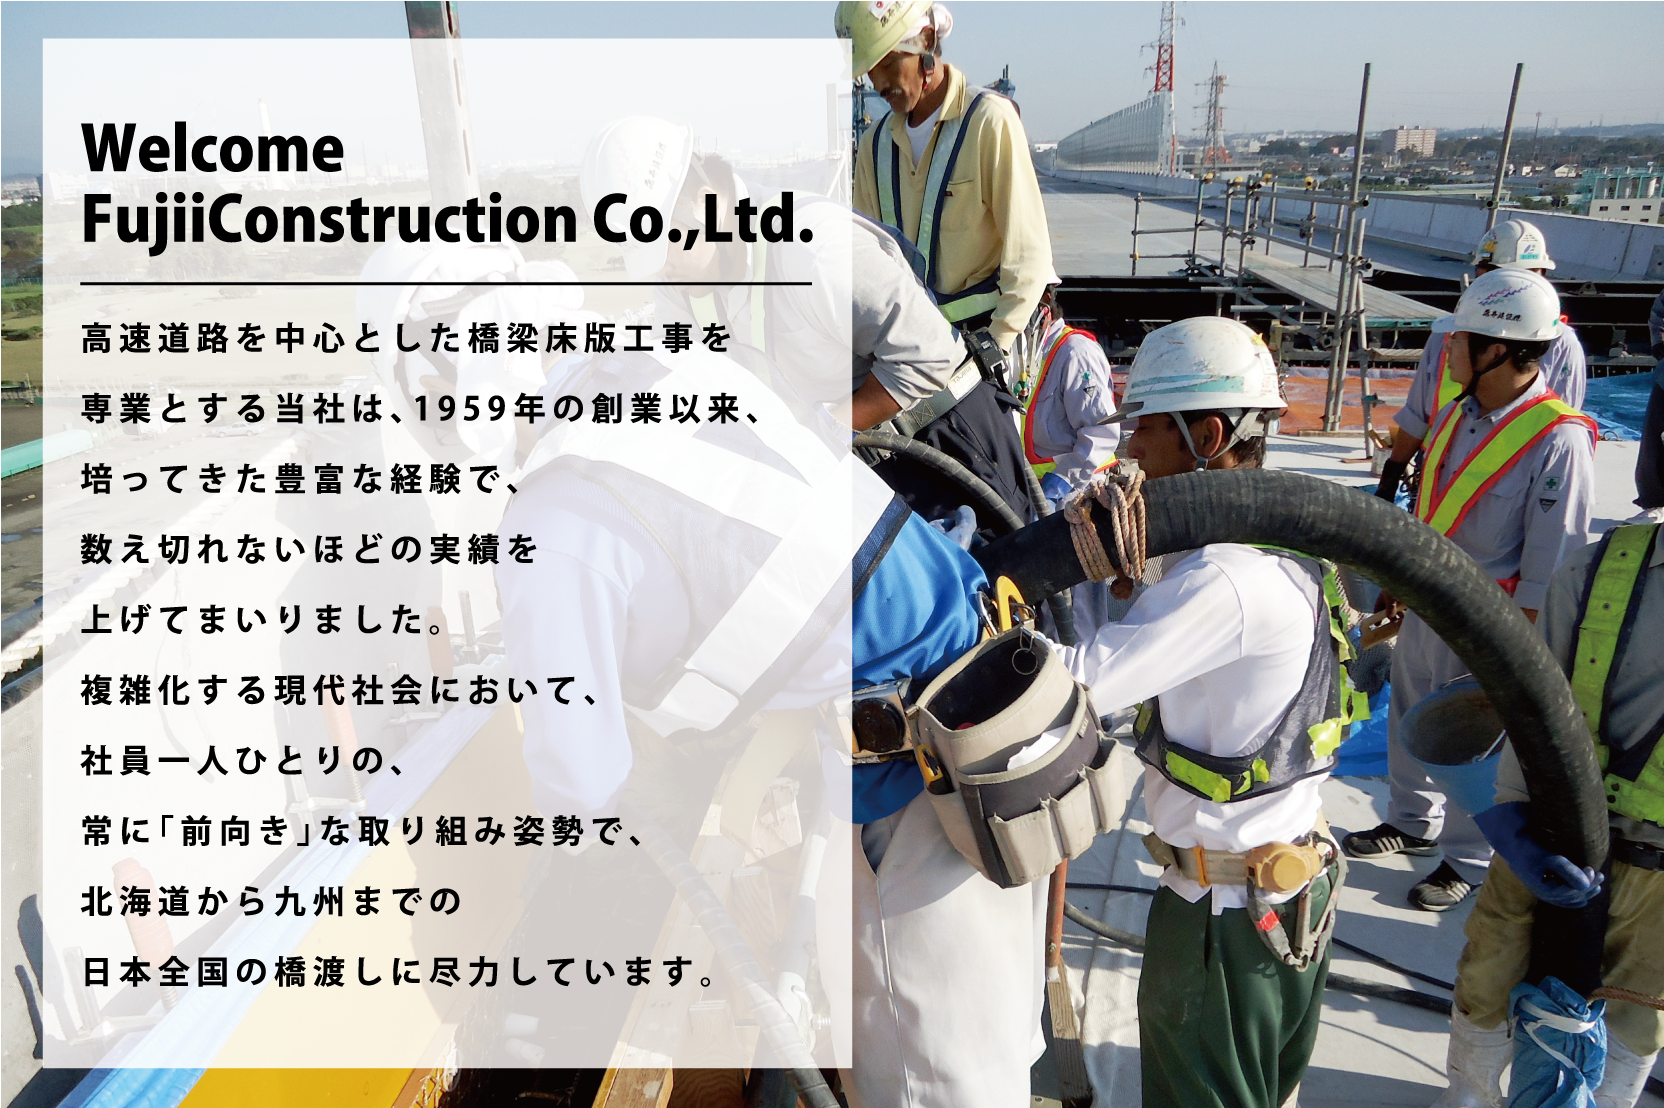 藤井建設の説明。高速道路を中心とした橋梁床版工事を専業とする藤井建設は日本の橋渡しに尽力しています。